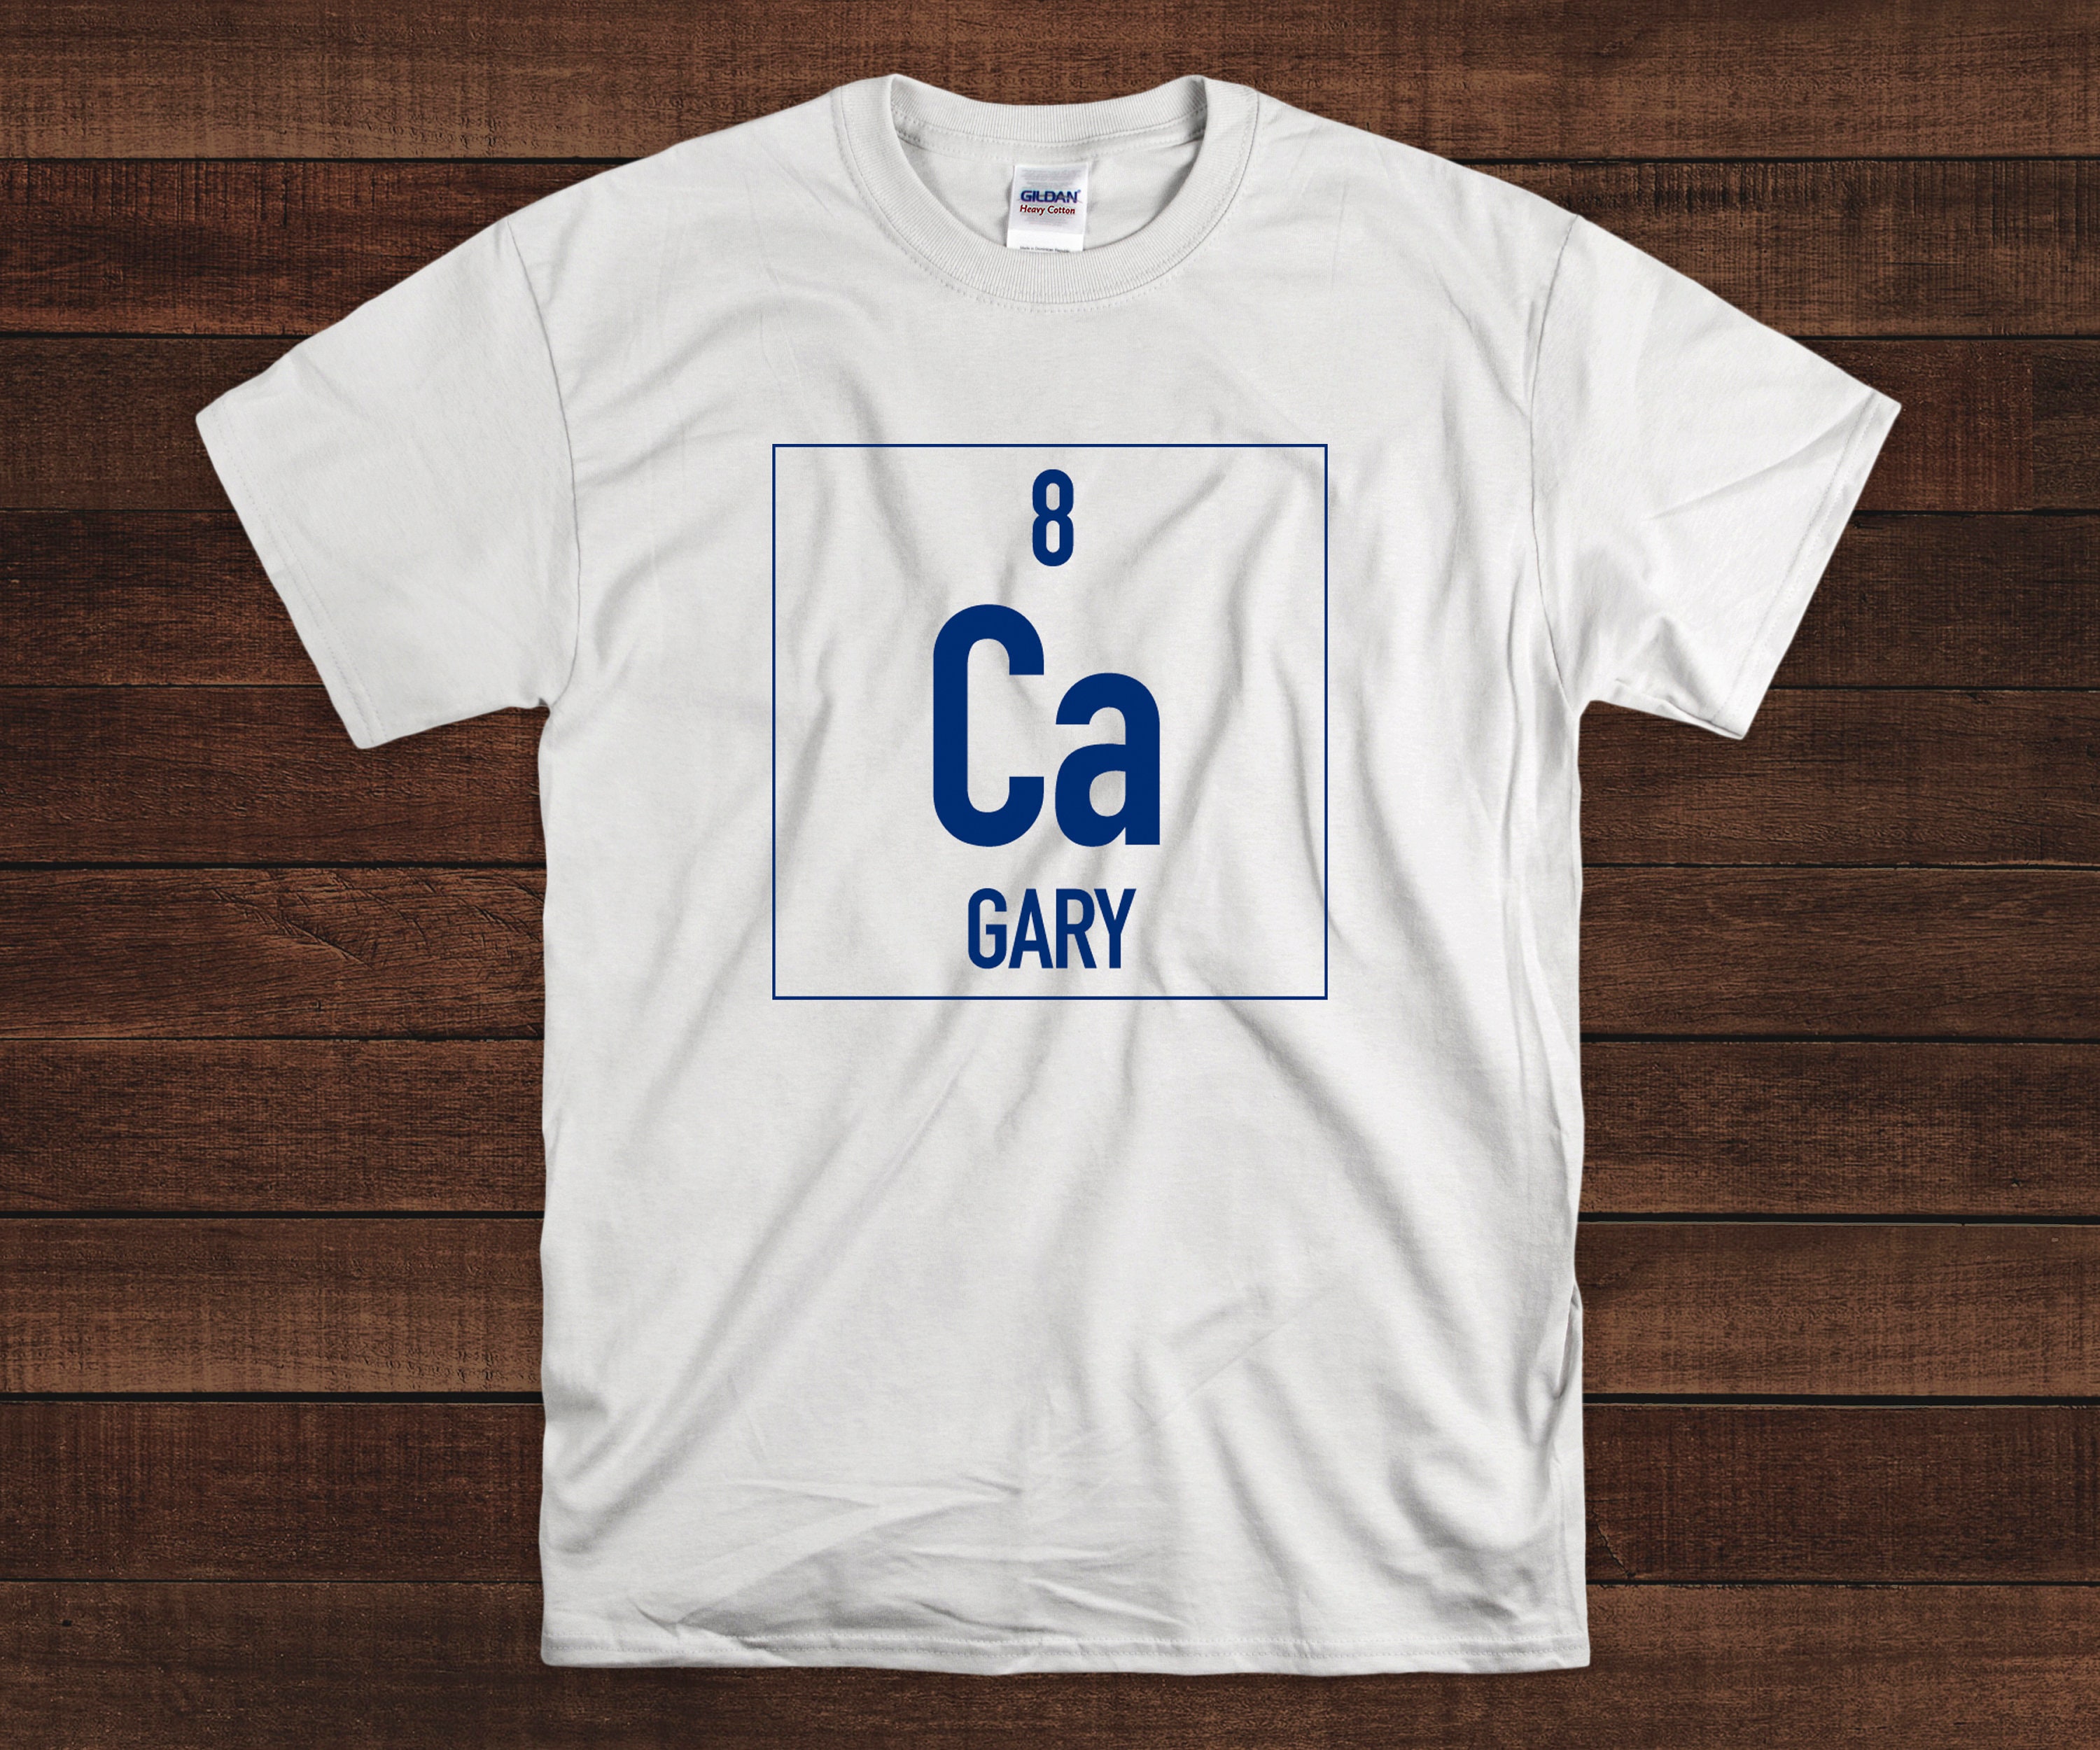 gary carter shirt